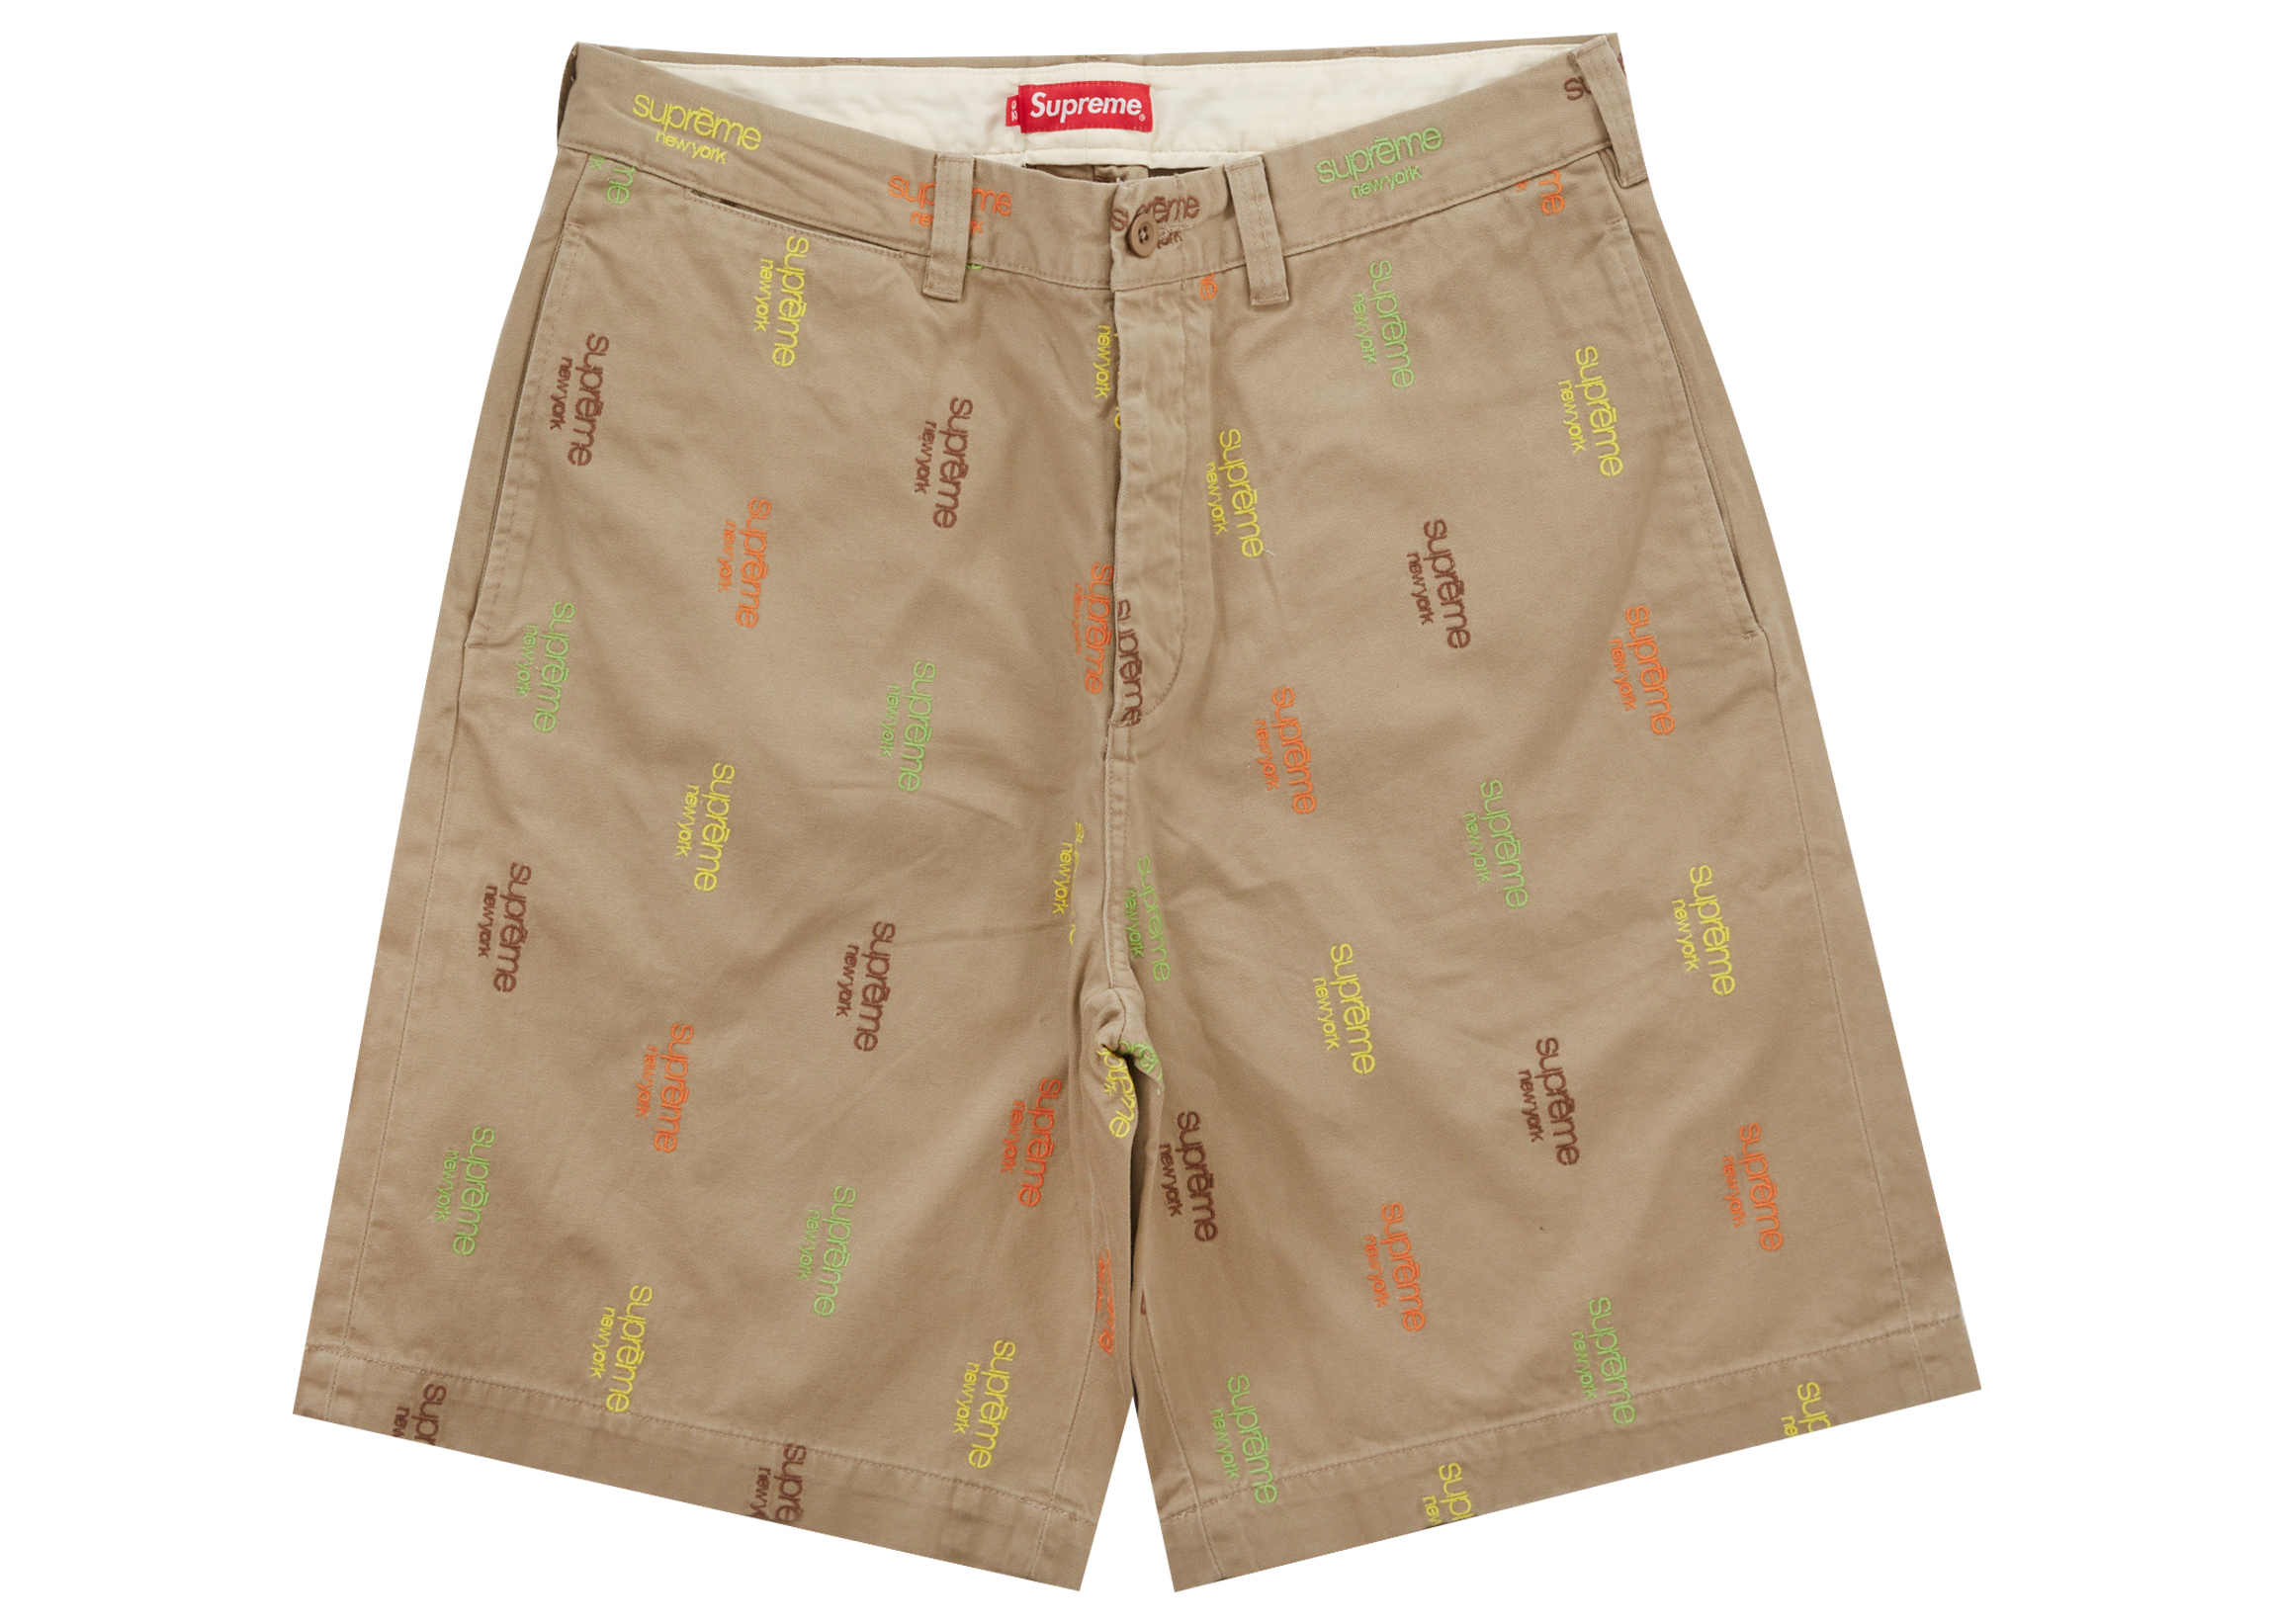 5,800円supreme classic logo chino shorts 32